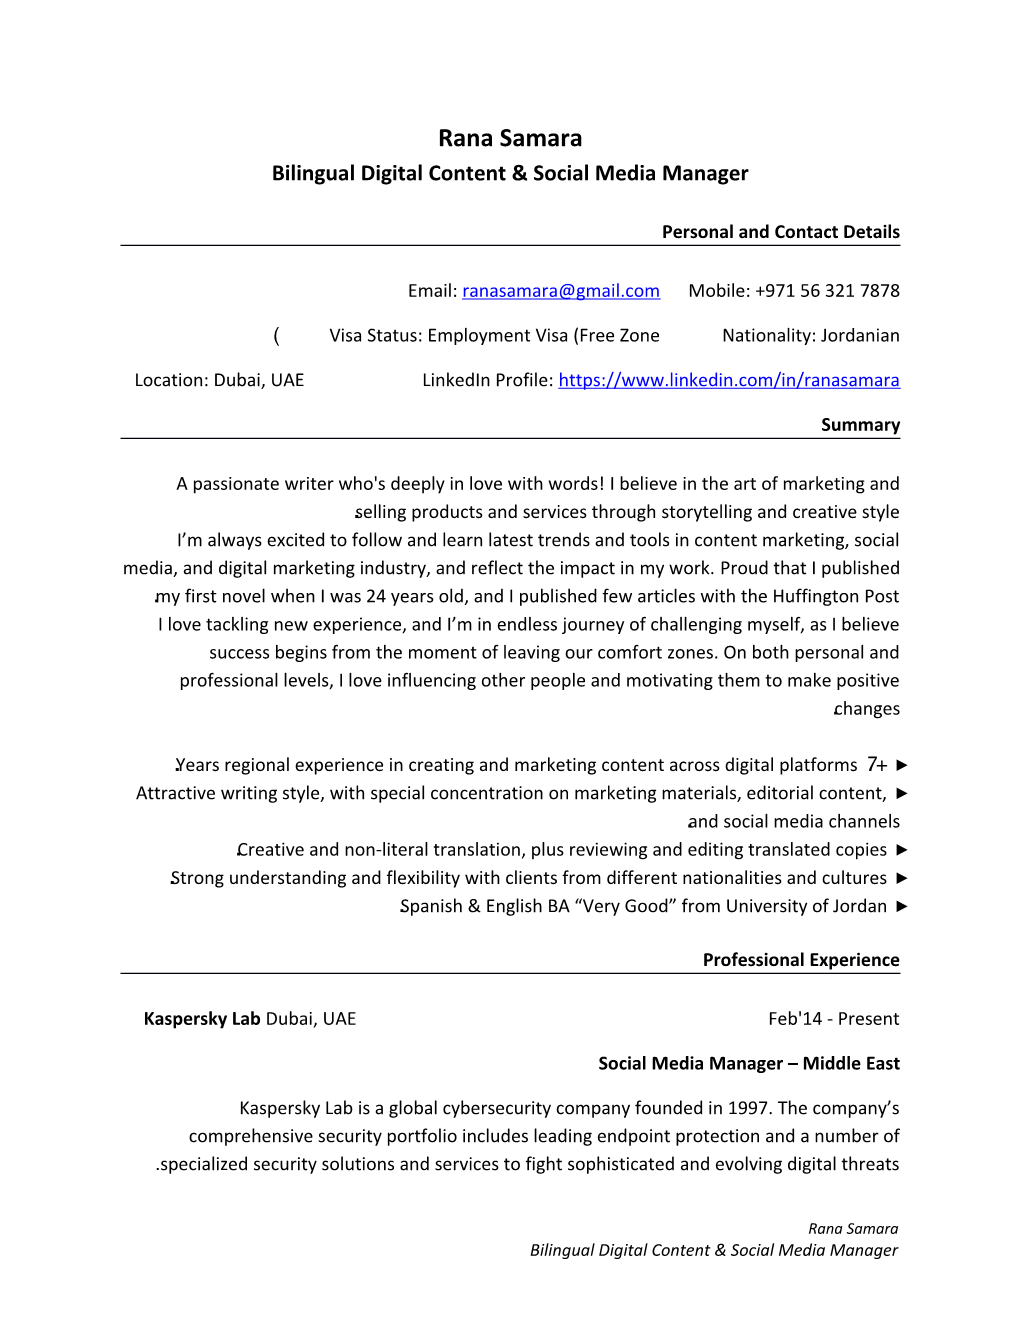 Bilingual Digital Content & Social Media Manager